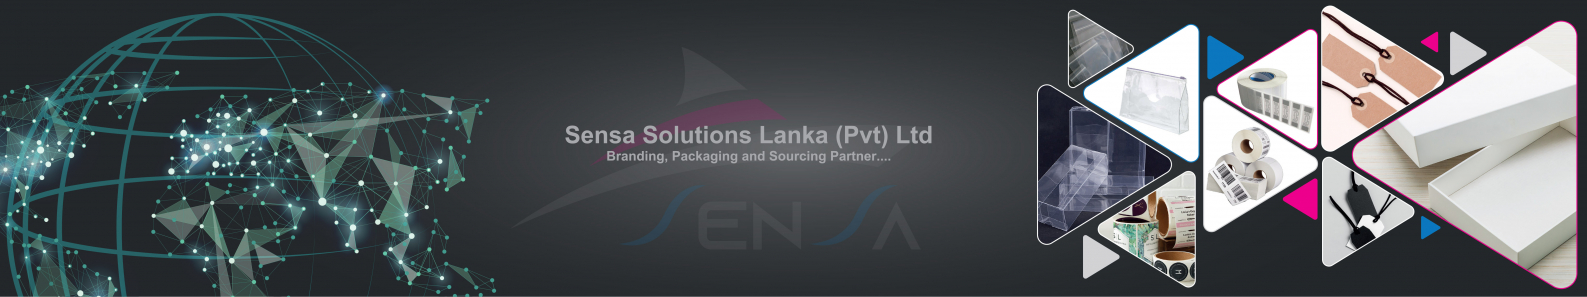 SENSA SOLUTIONS LANKA PVT LTD